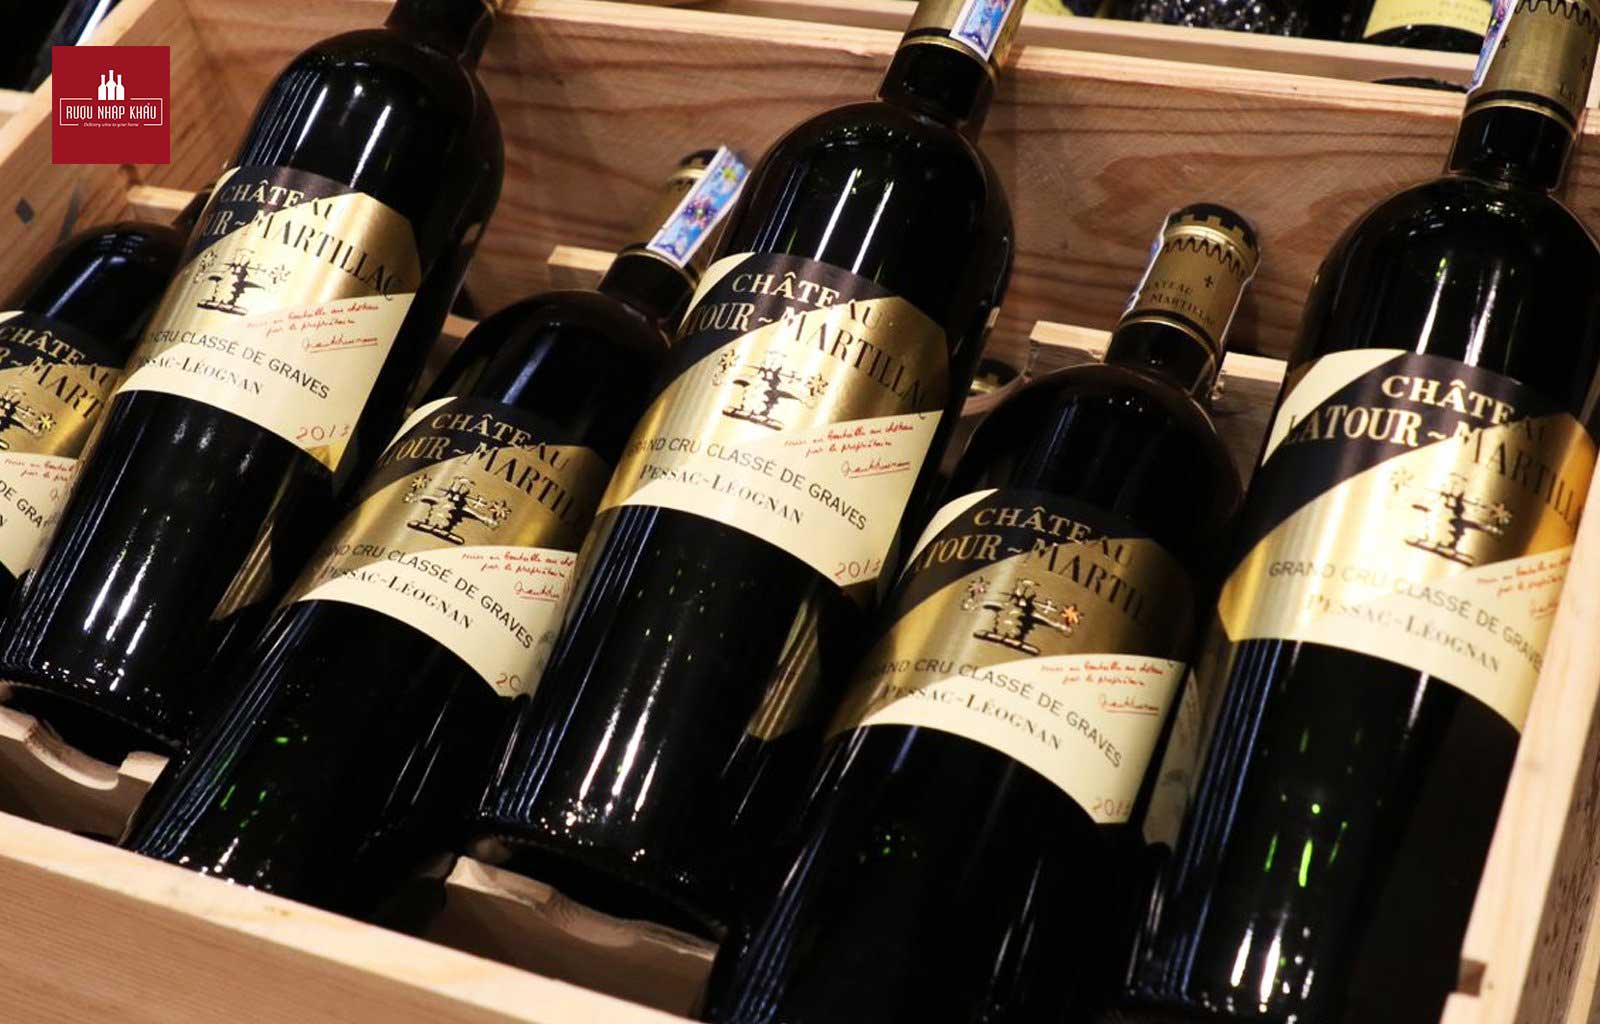 Quà tặng rượu vang Pháp cho đối tác - Chateau Latour-Martillac